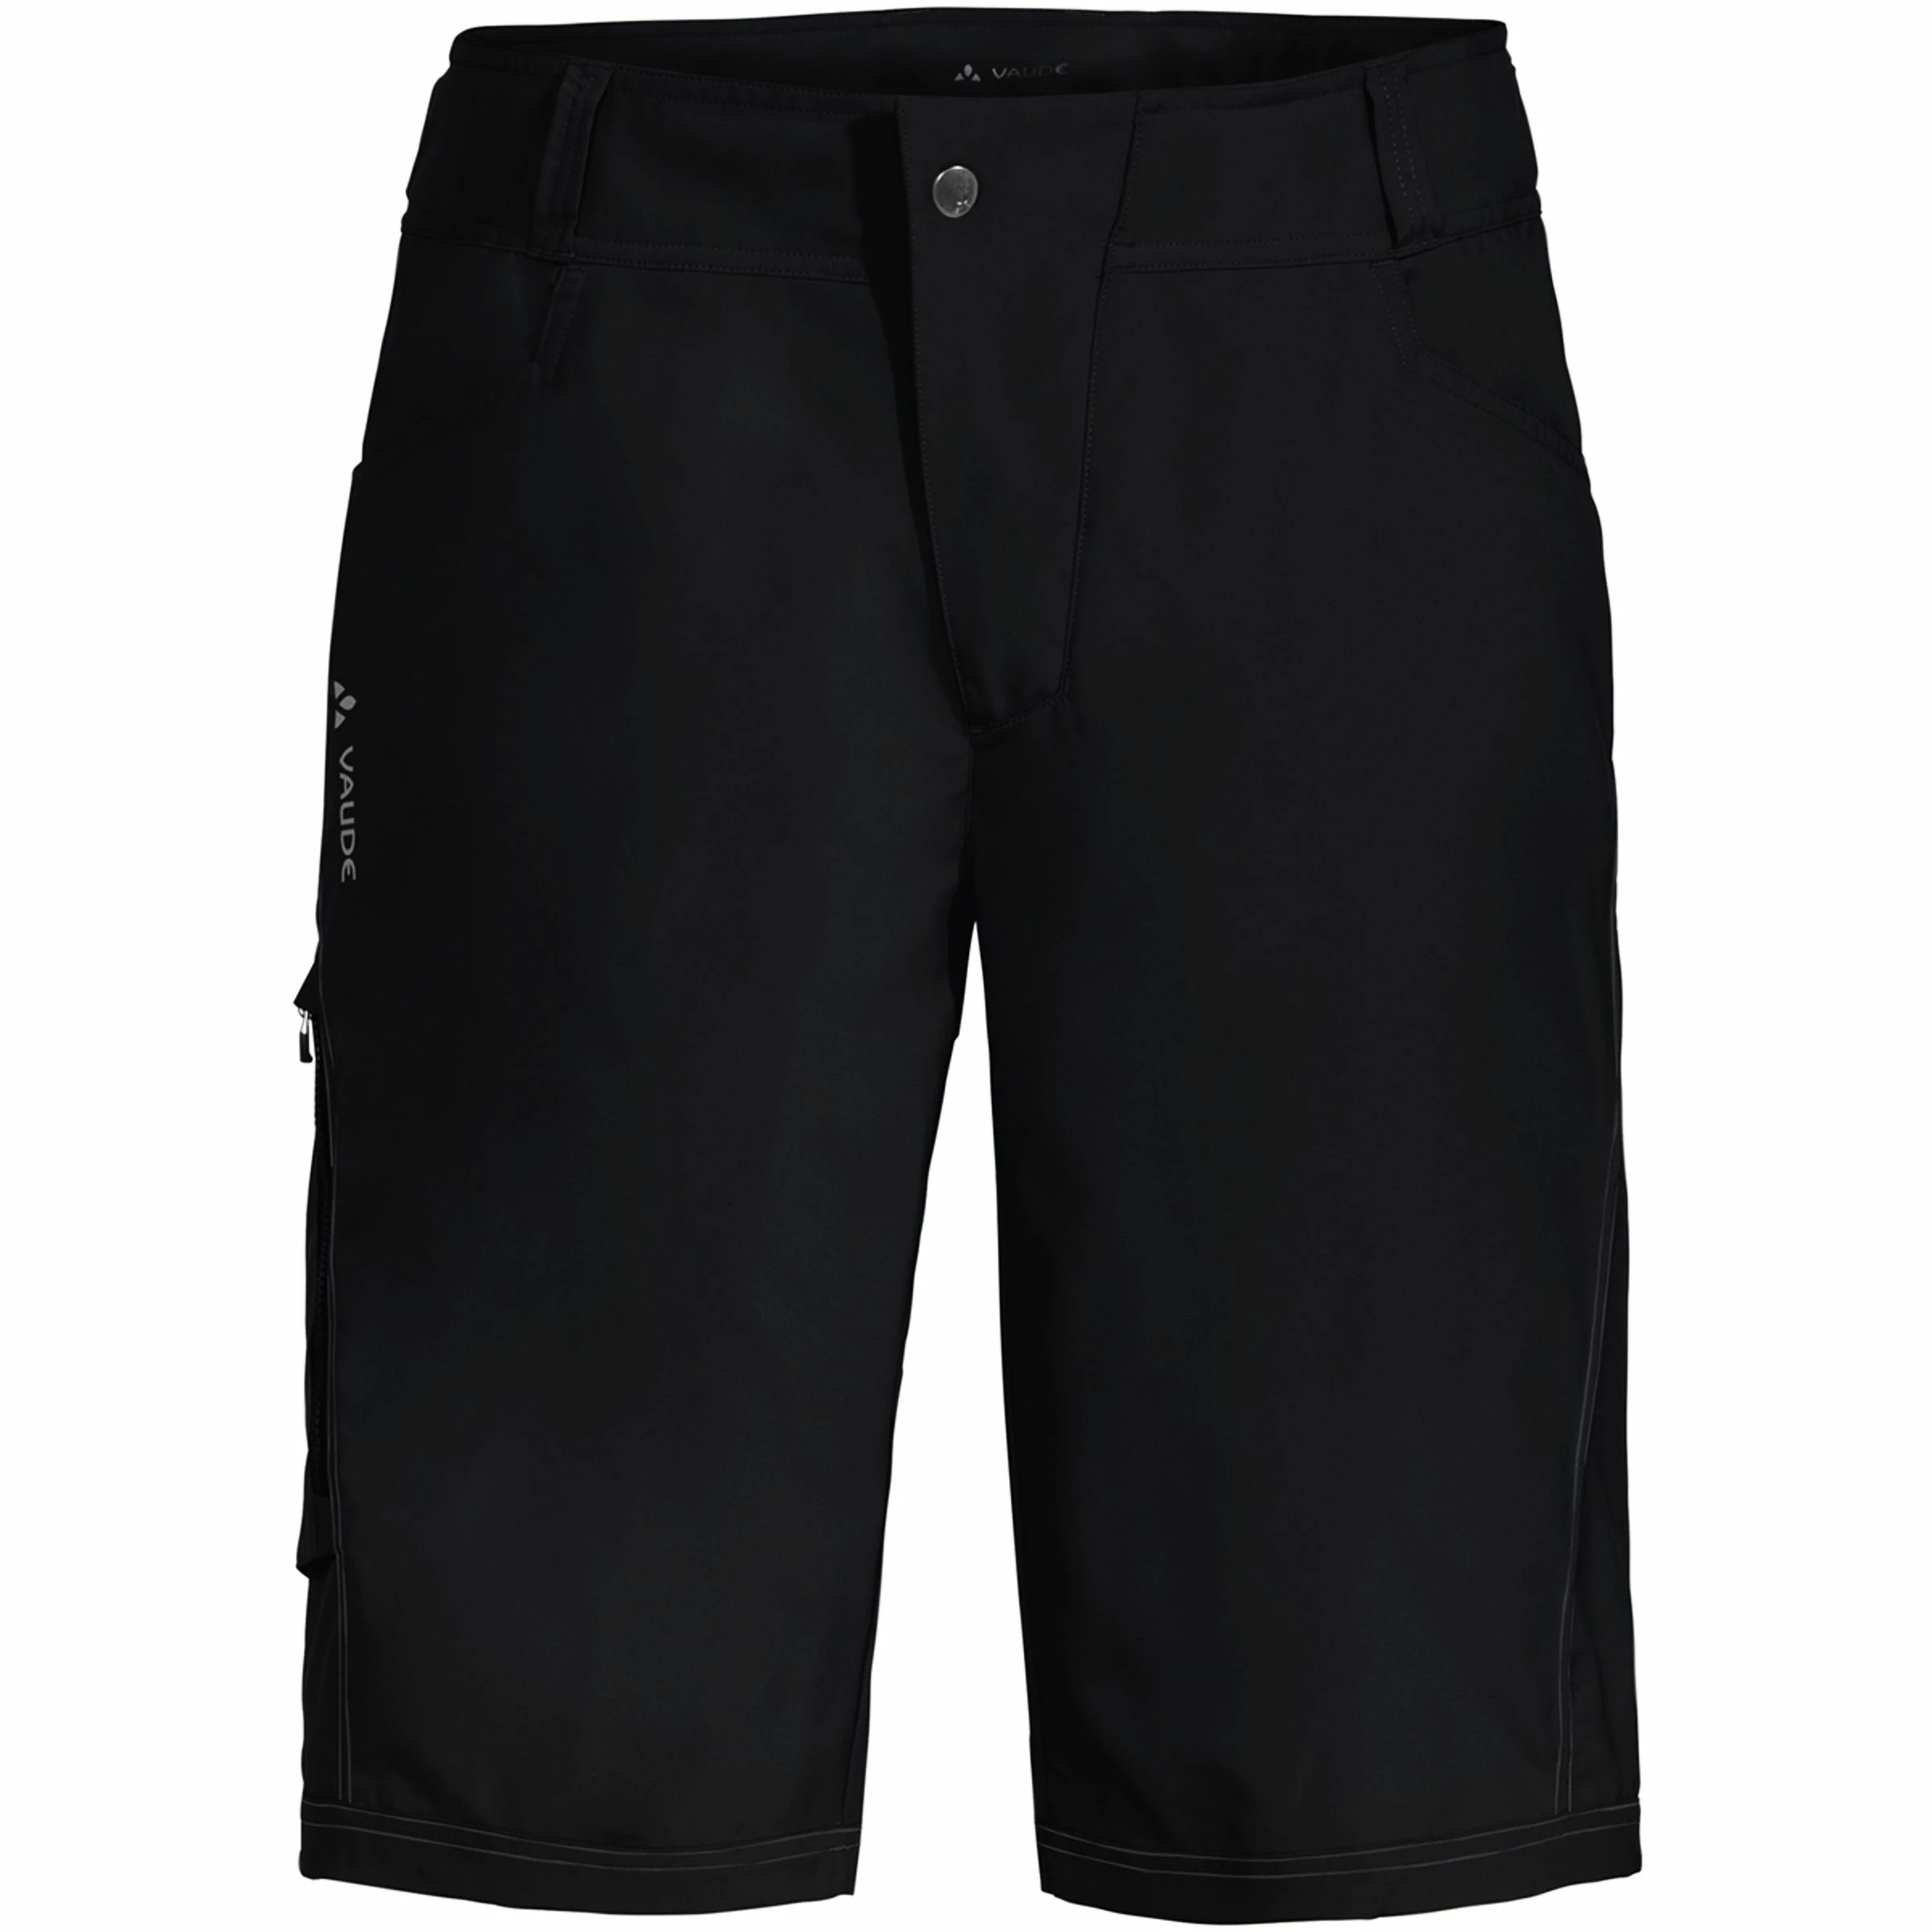 Men's cycling shorts VAUDE Ledro Shorts Black/black L